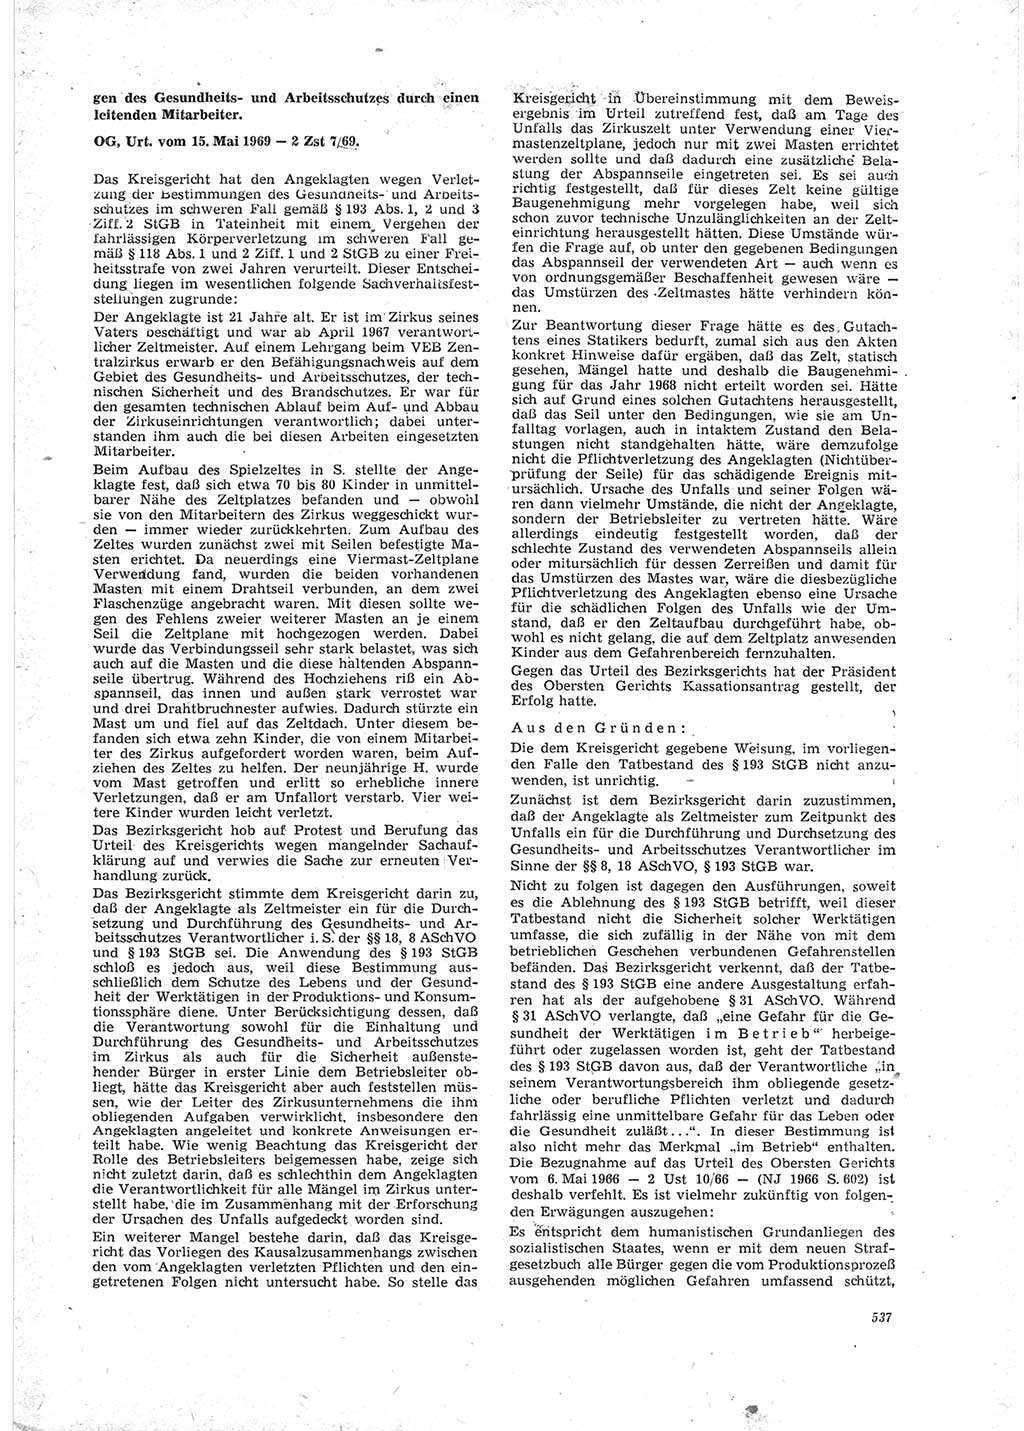 Neue Justiz (NJ), Zeitschrift für Recht und Rechtswissenschaft [Deutsche Demokratische Republik (DDR)], 23. Jahrgang 1969, Seite 537 (NJ DDR 1969, S. 537)